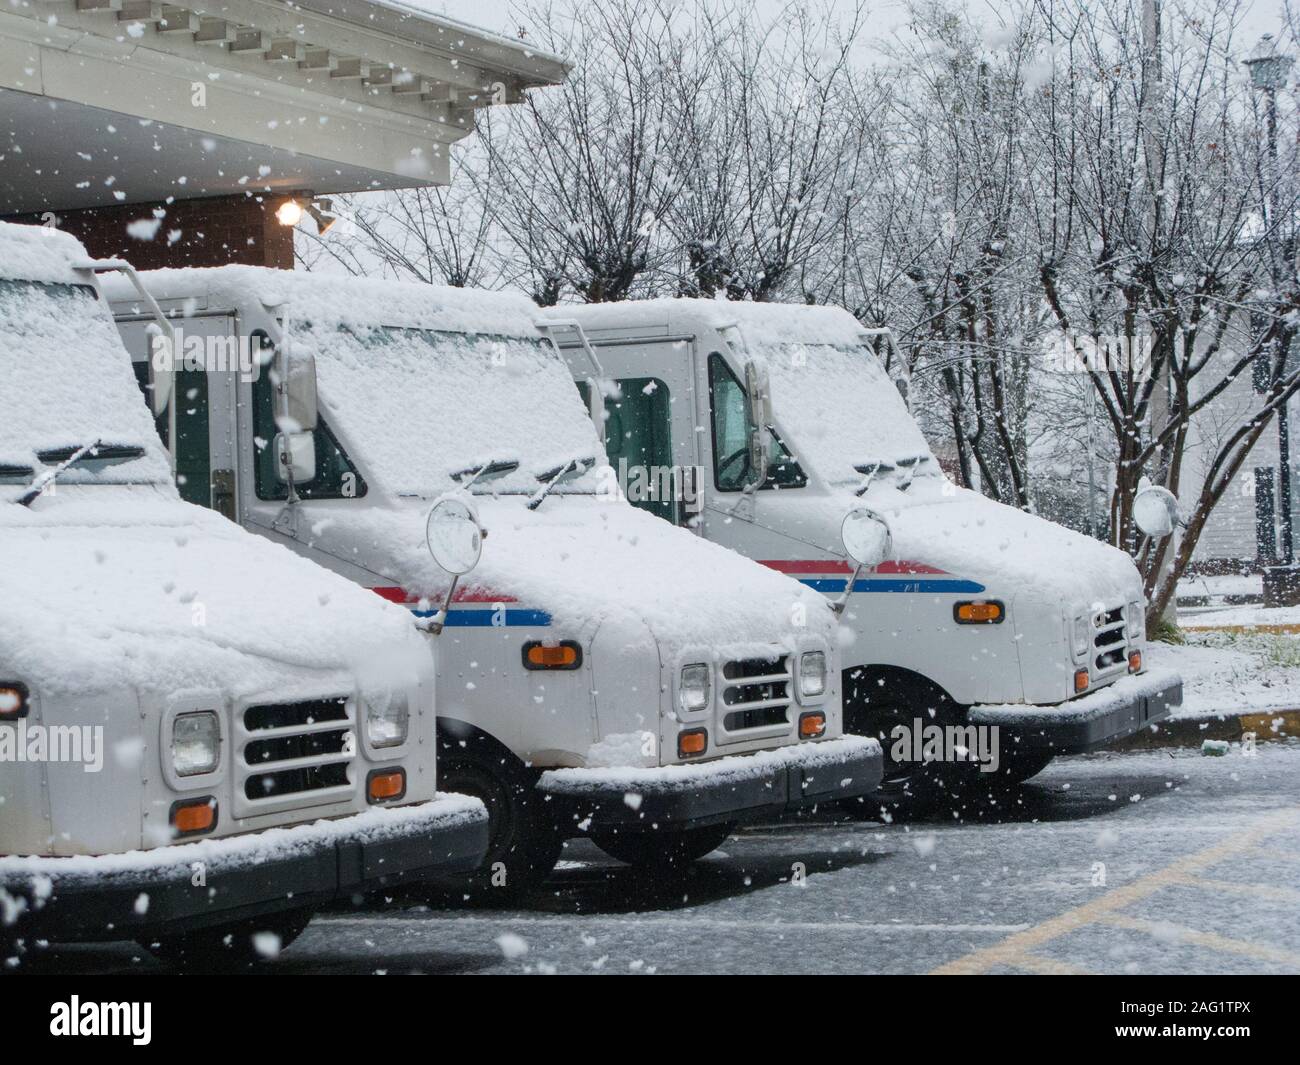 LAWRENCEVILLE, GÉORGIE - mars 1, 2009 : Trois camions mail alignés à l'extérieur du bureau de poste de Lawrenceville lors d'une tempête de neige. Banque D'Images